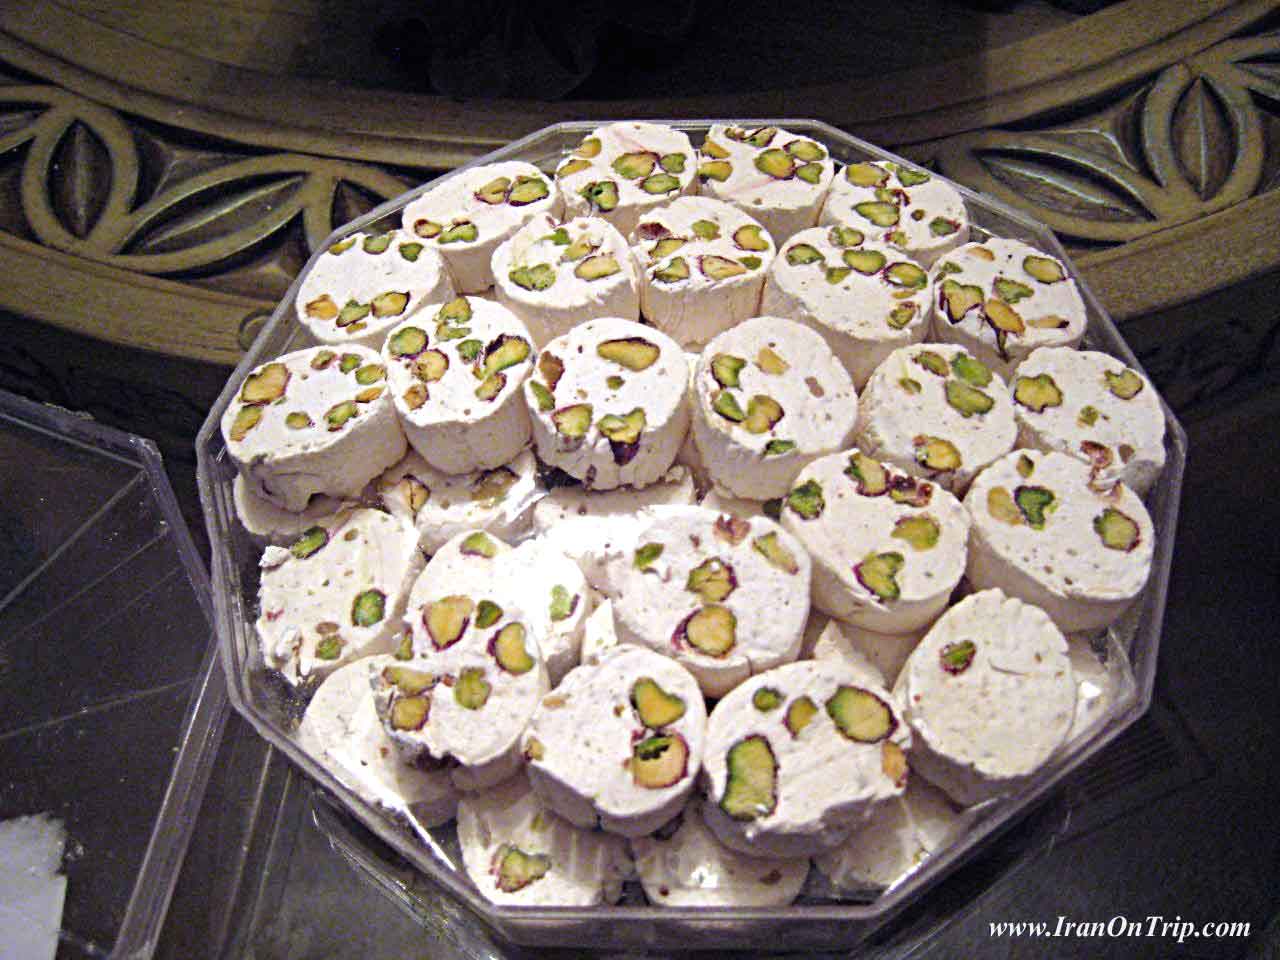 Gaz-(candy) -Isfahan cuisine